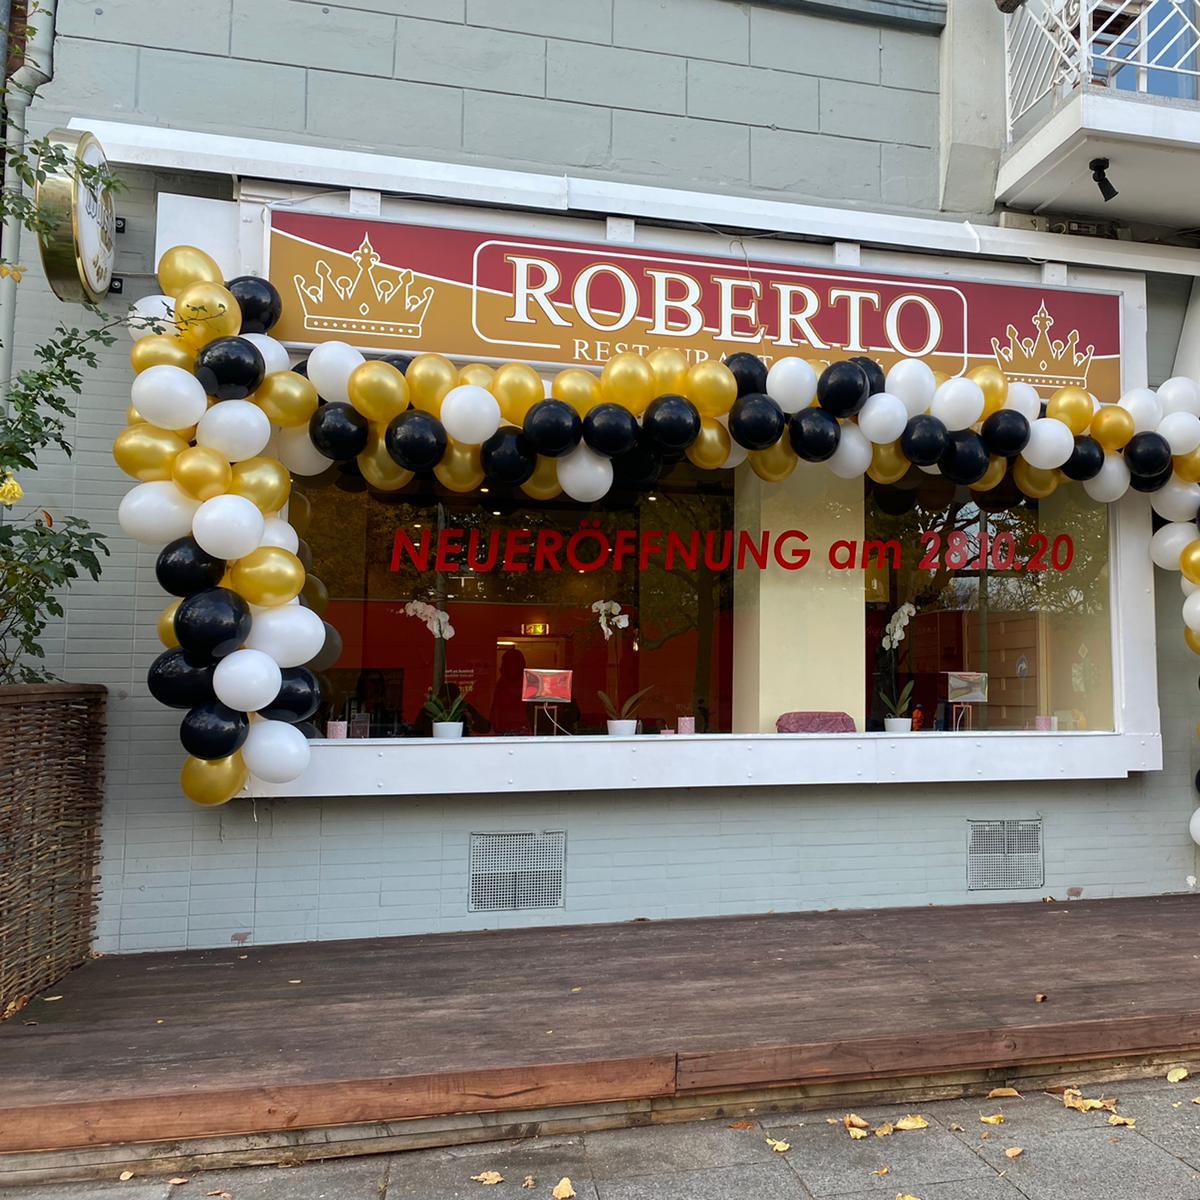 Restaurant "Restaurant Roberto" in  Kiel